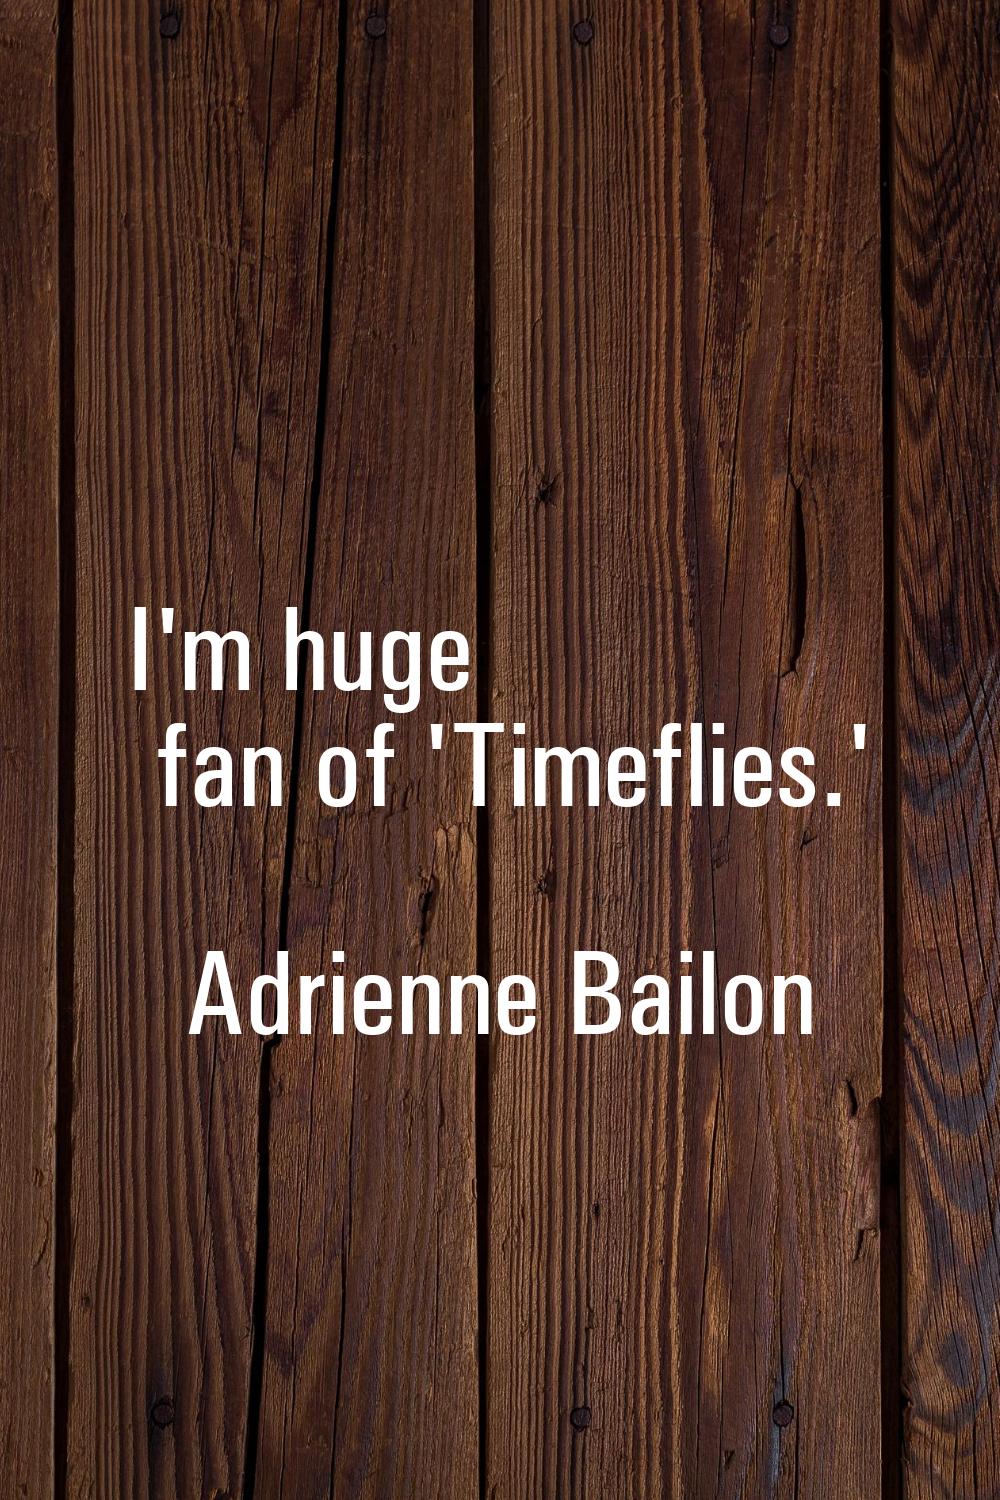 I'm huge fan of 'Timeflies.'